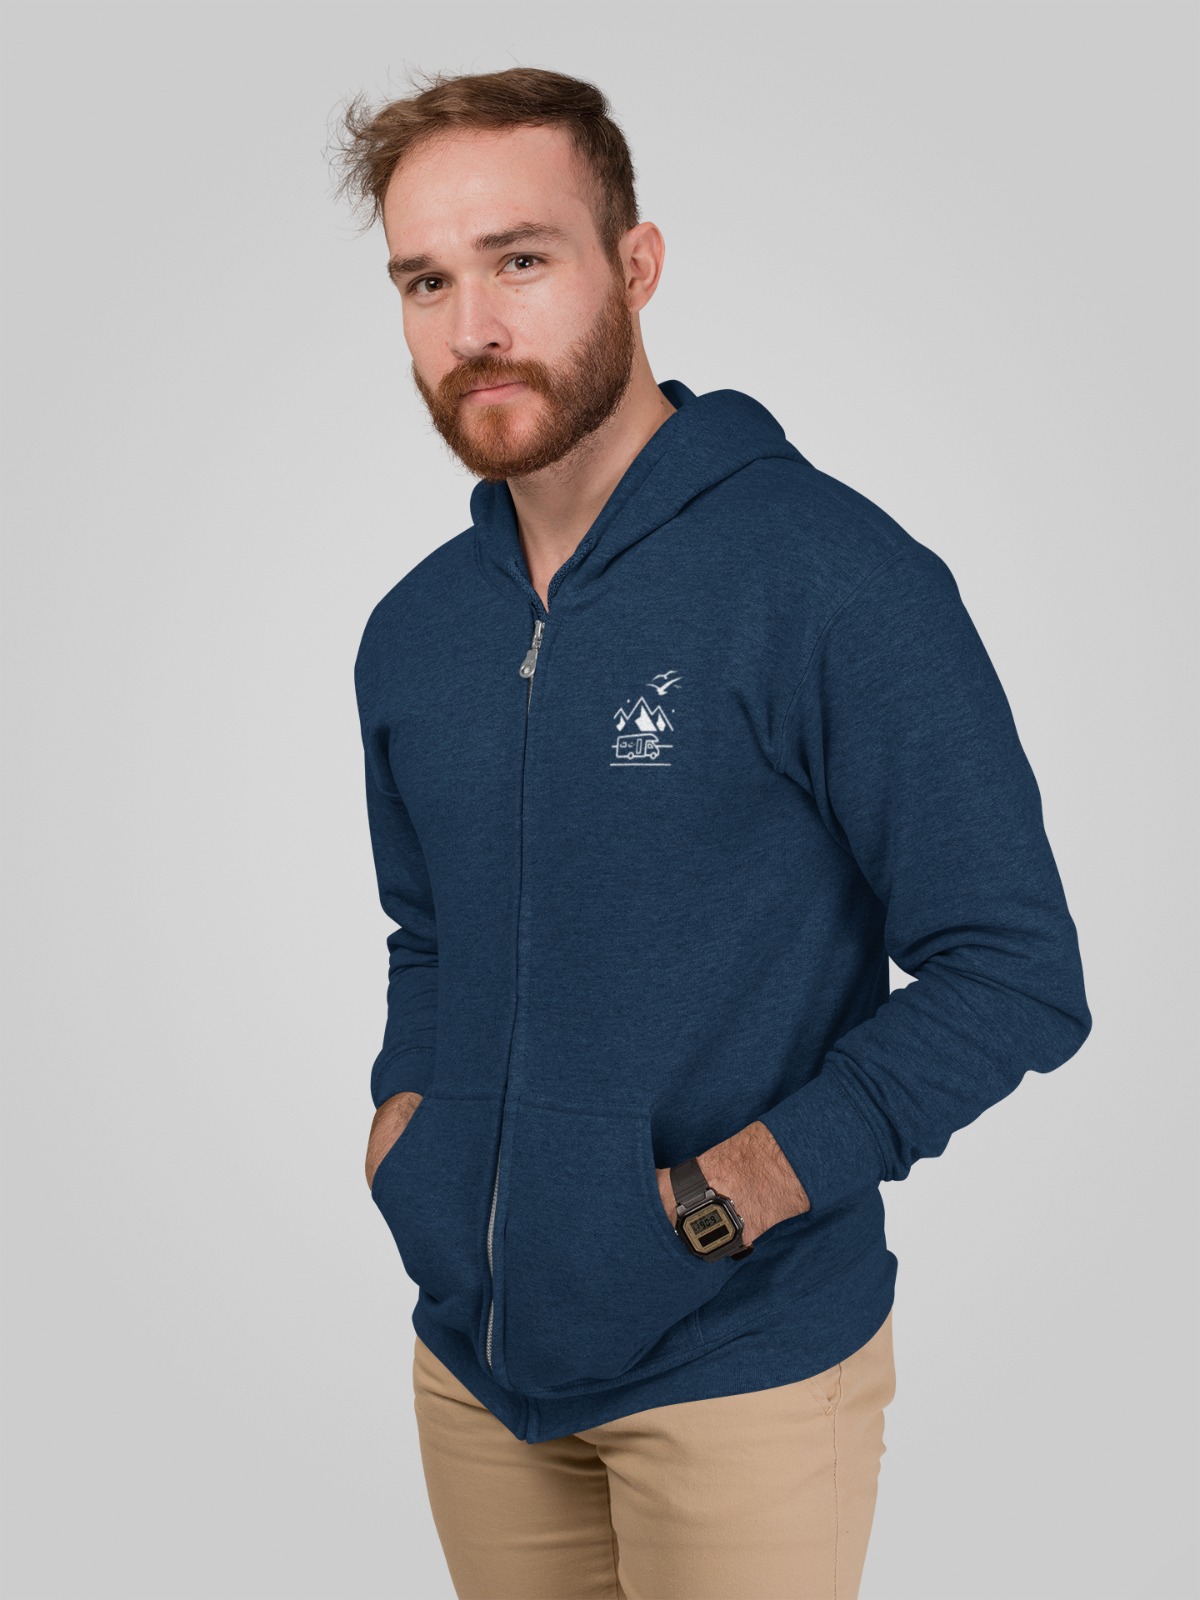 Vanlife hoodie for men